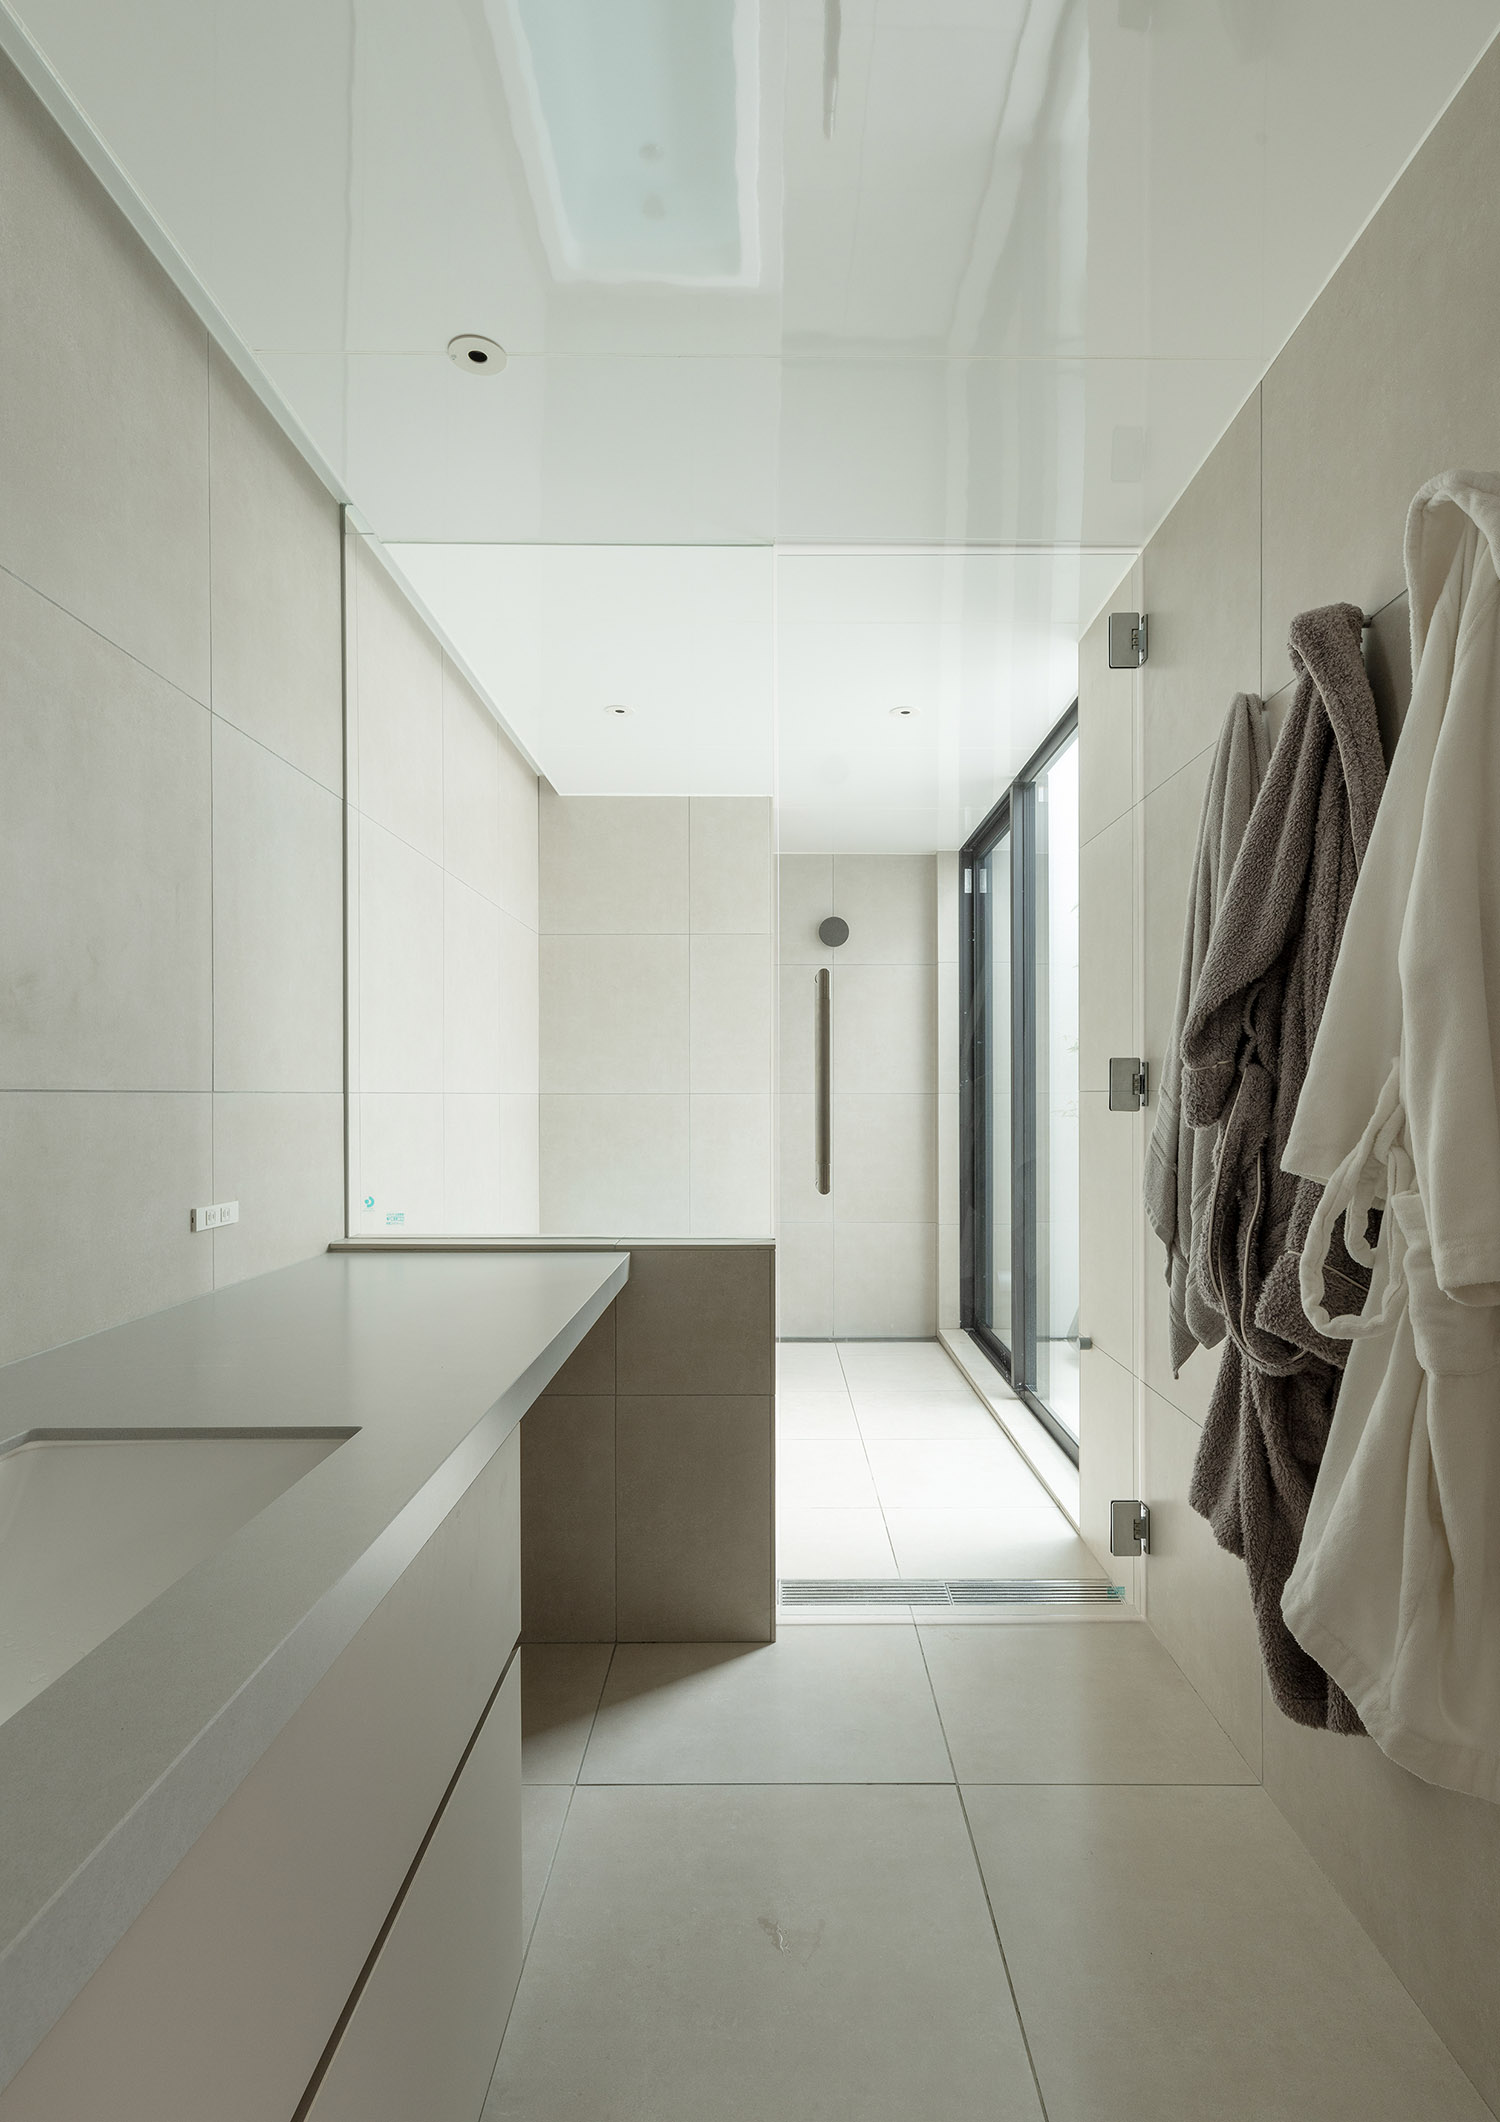 壁にバスローブが掛けられている洗面所と、ガラス扉で仕切られた浴室・デザイン住宅